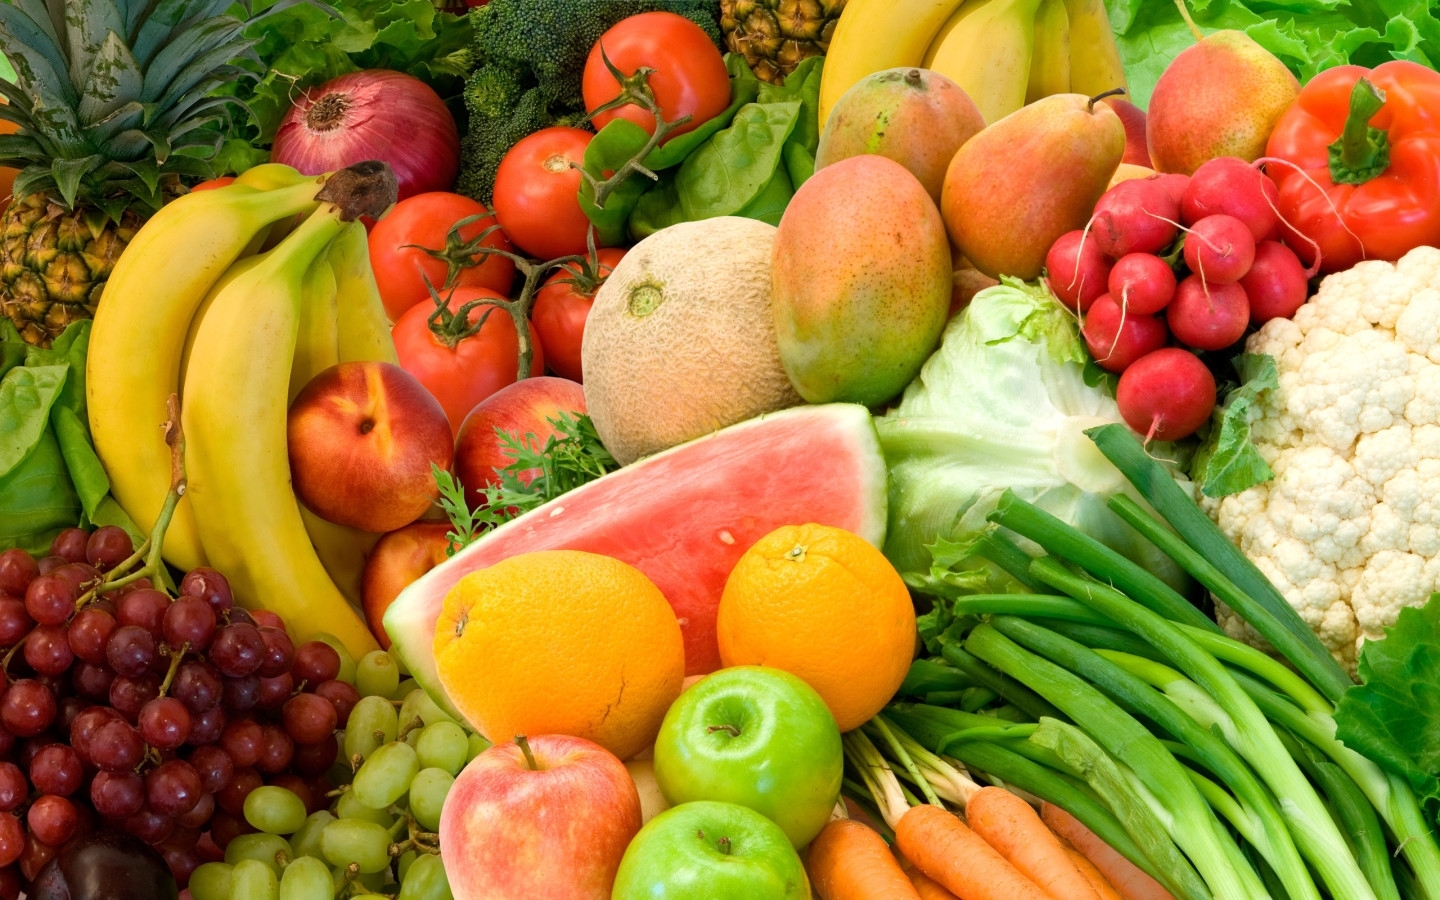 fruits, vegetables, food Image for desktop